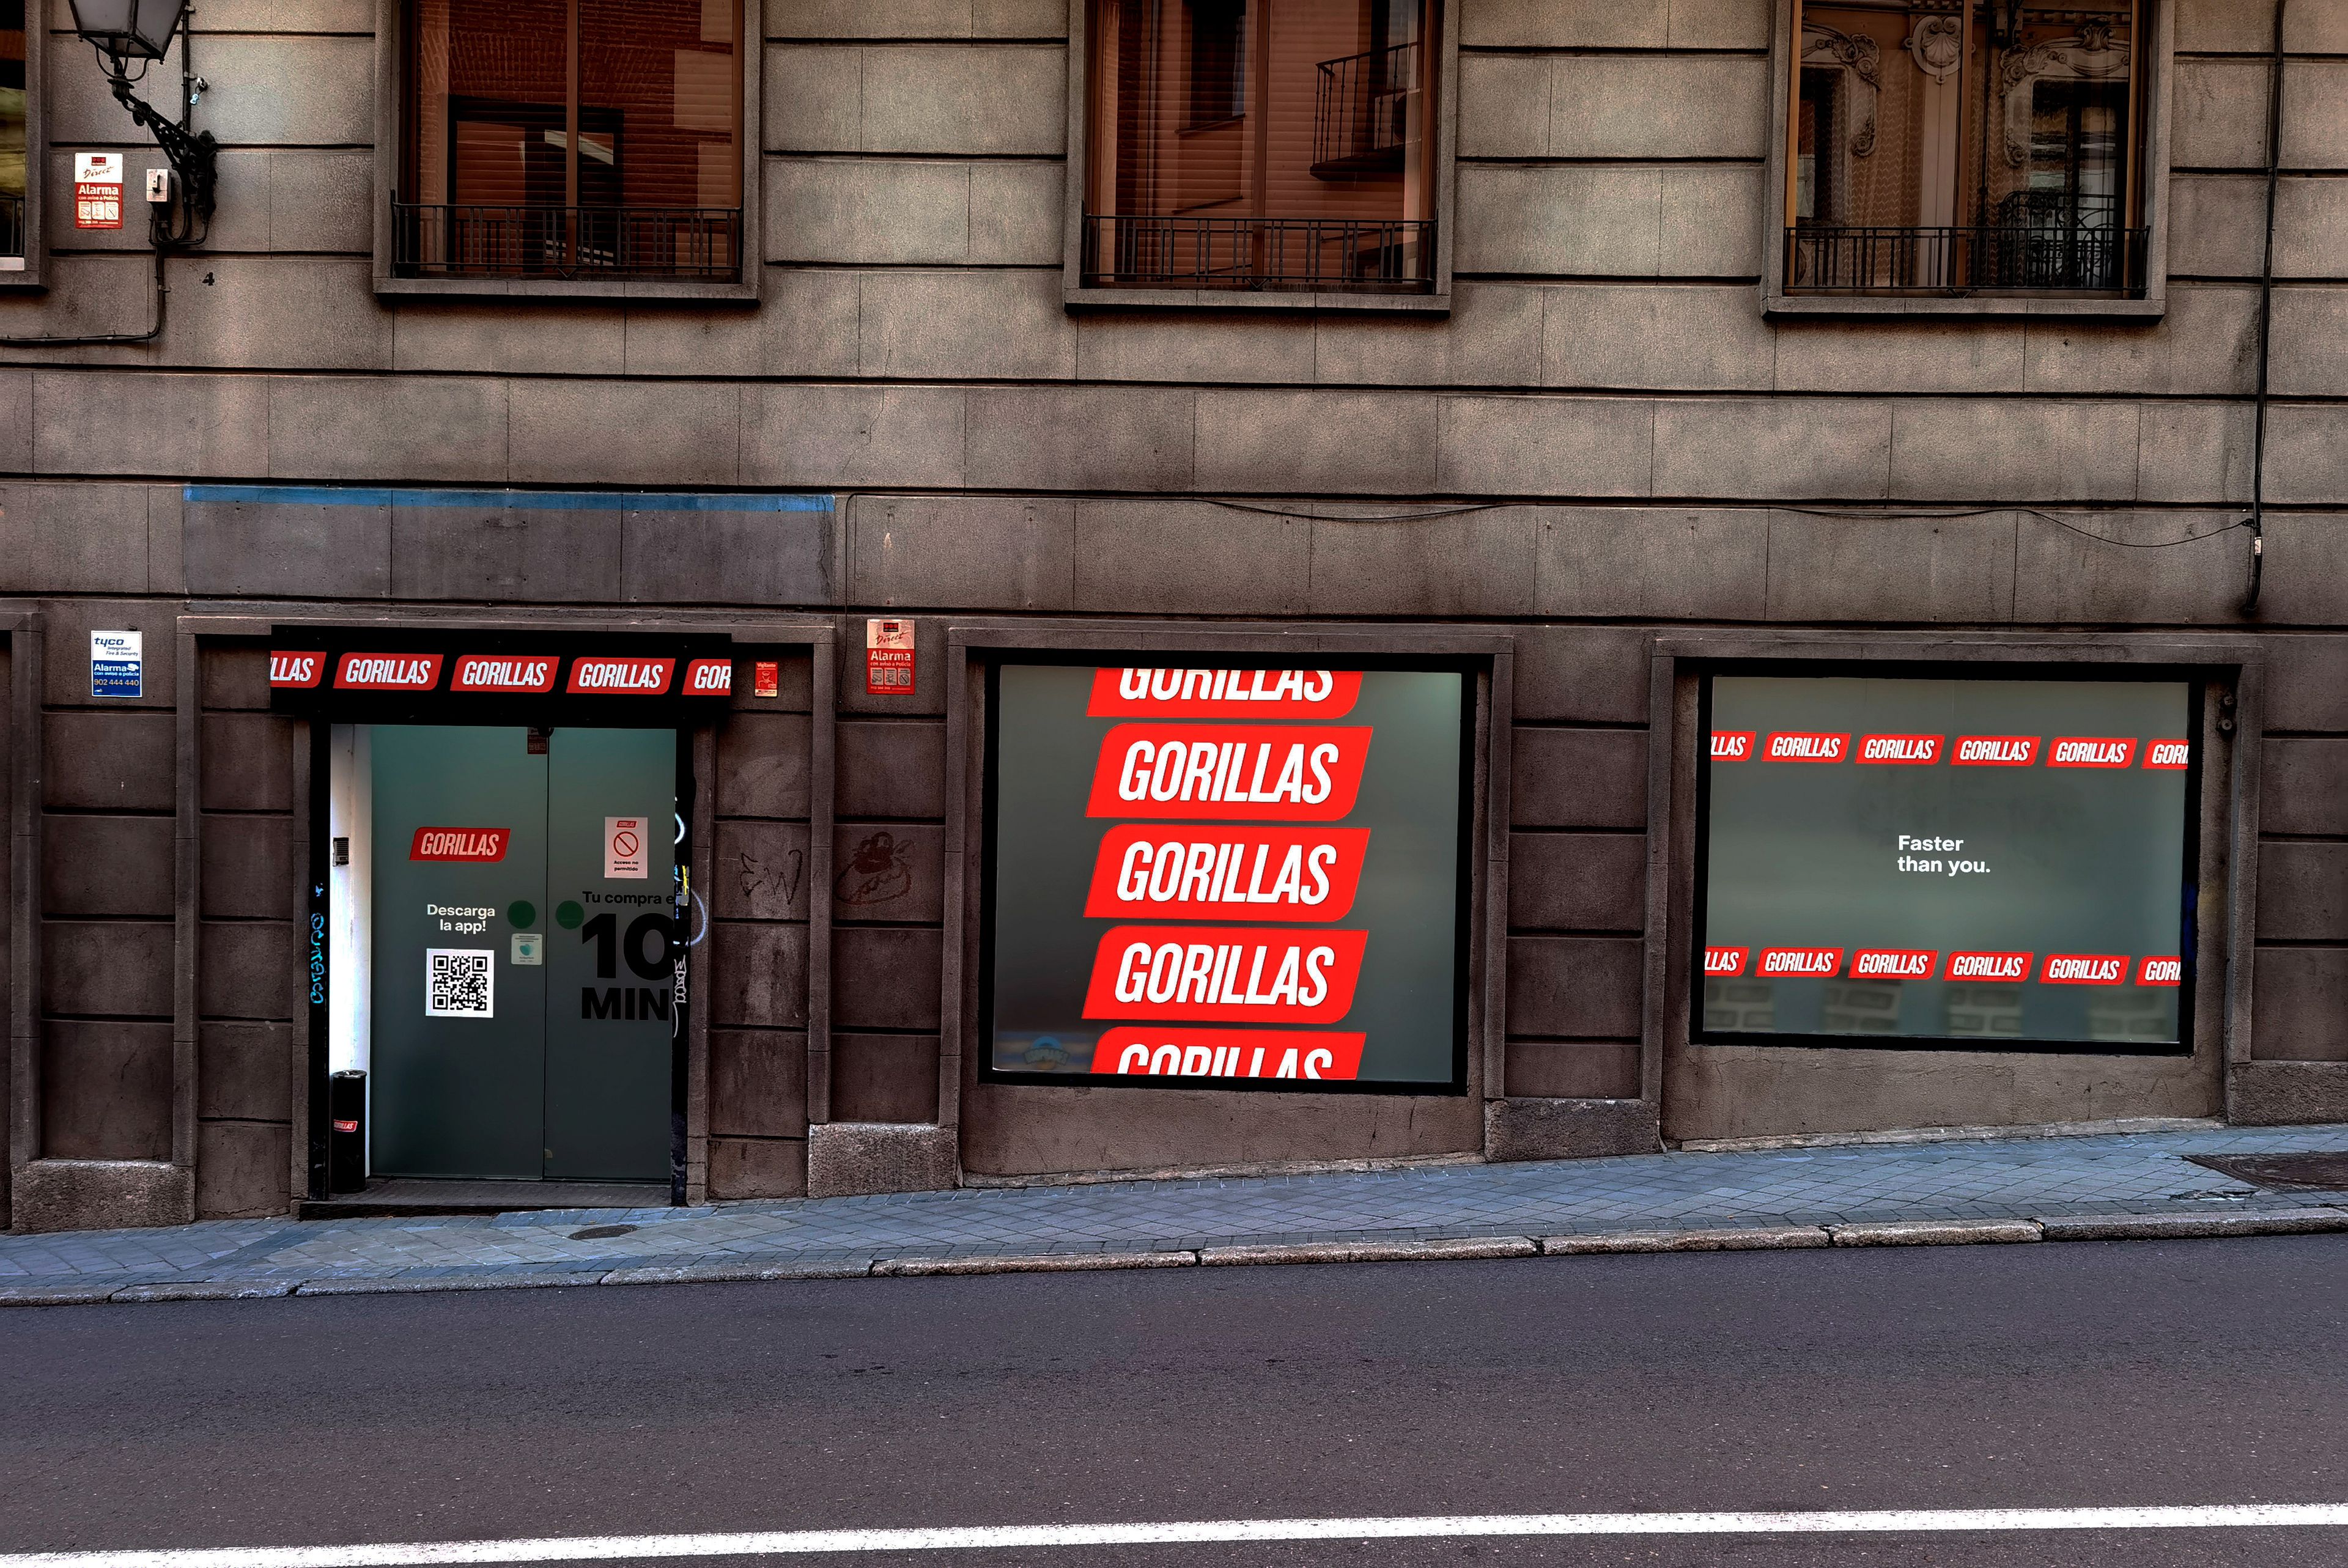 El exterior de uno de los 'supermercados fantasma' de Gorillas en una estrecha calle de Madrid.